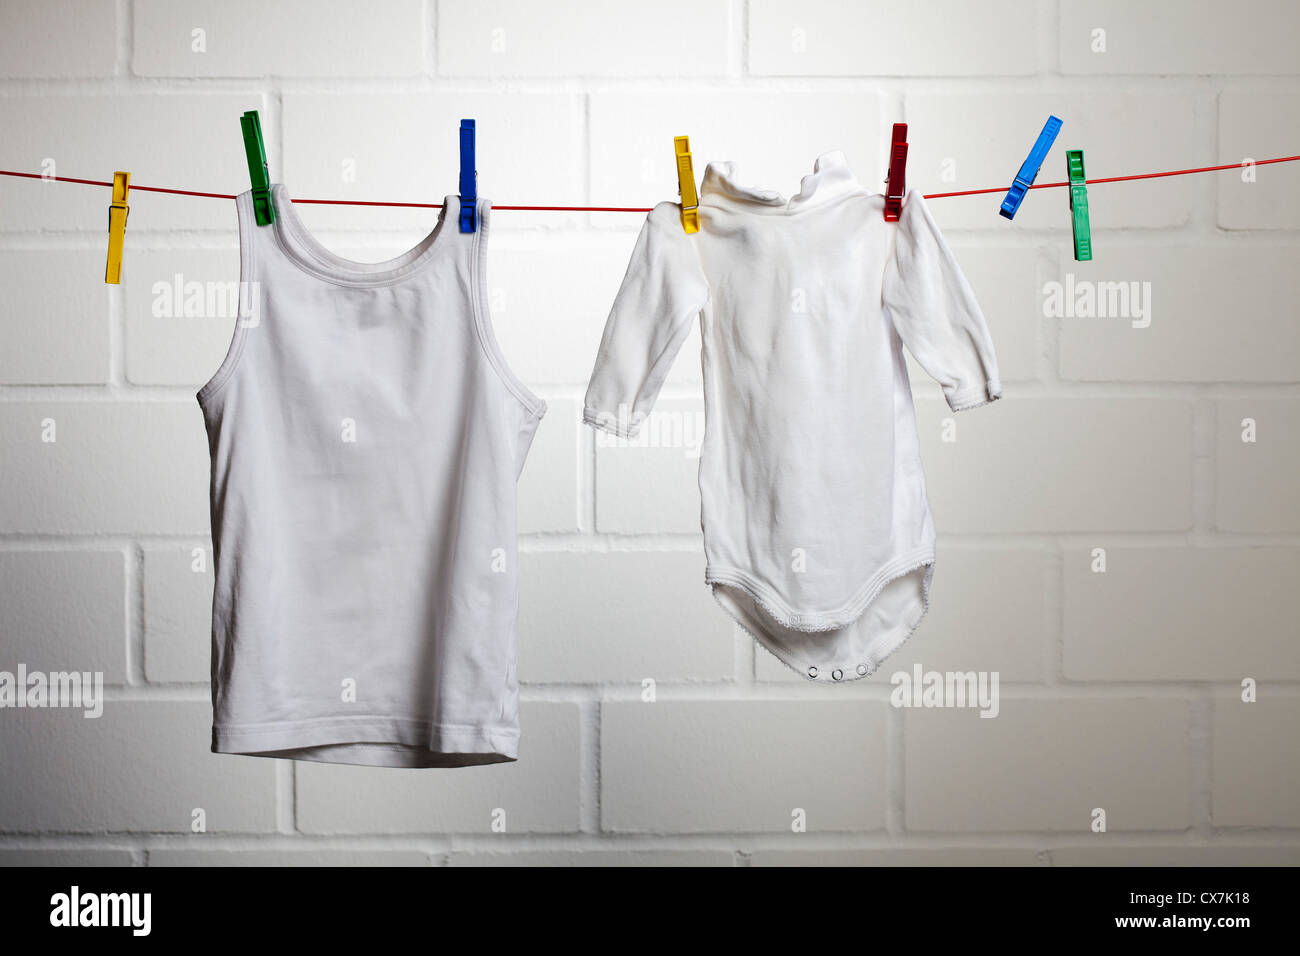 Wäsche auf einer Wäscheleine hängen Stockfoto